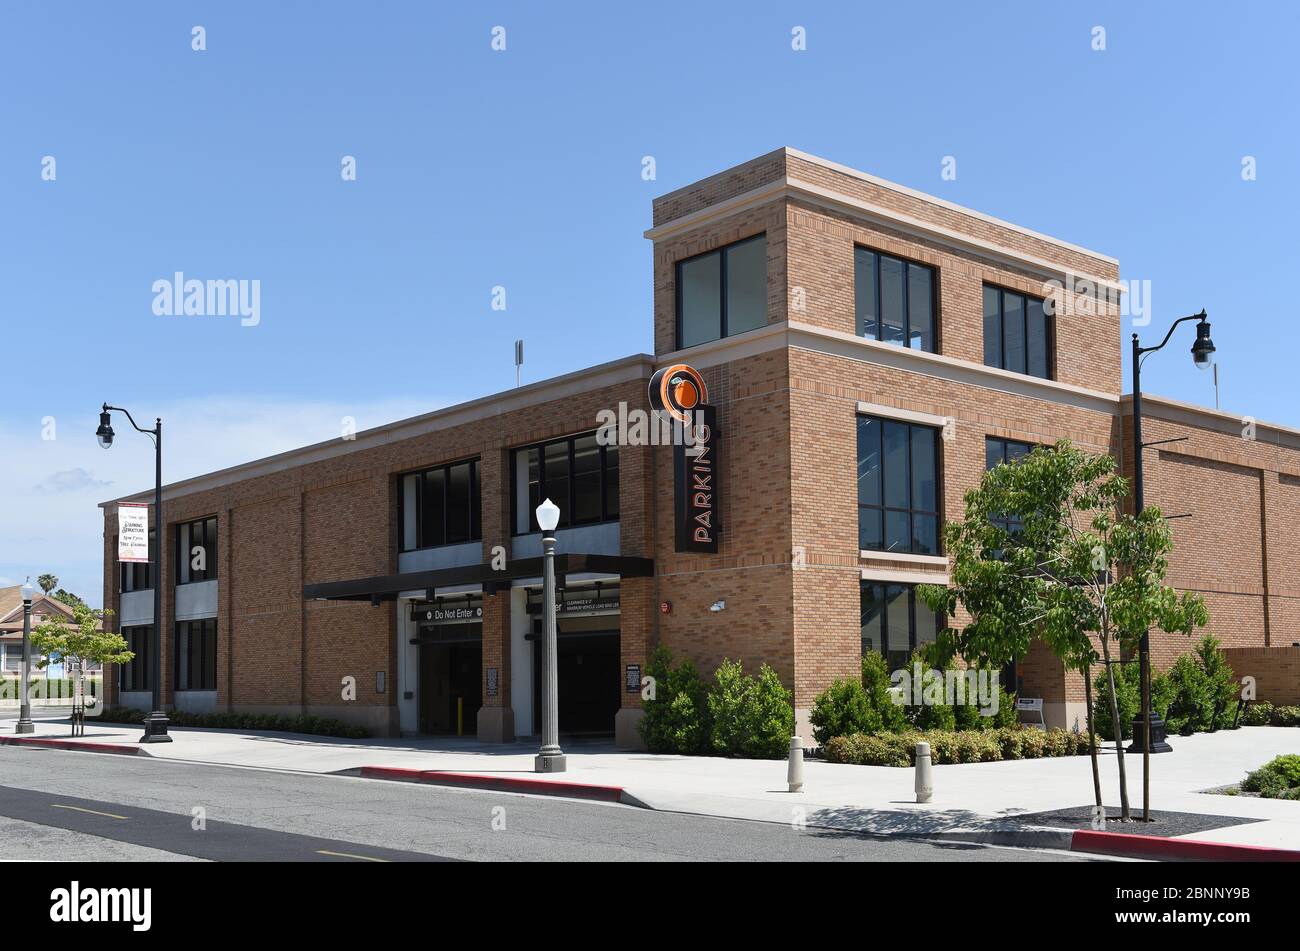 ORANGE, CALIFORNIE - 14 MAI 2020 : structure de stationnement dans la vieille ville de la ville d'Orange. Banque D'Images